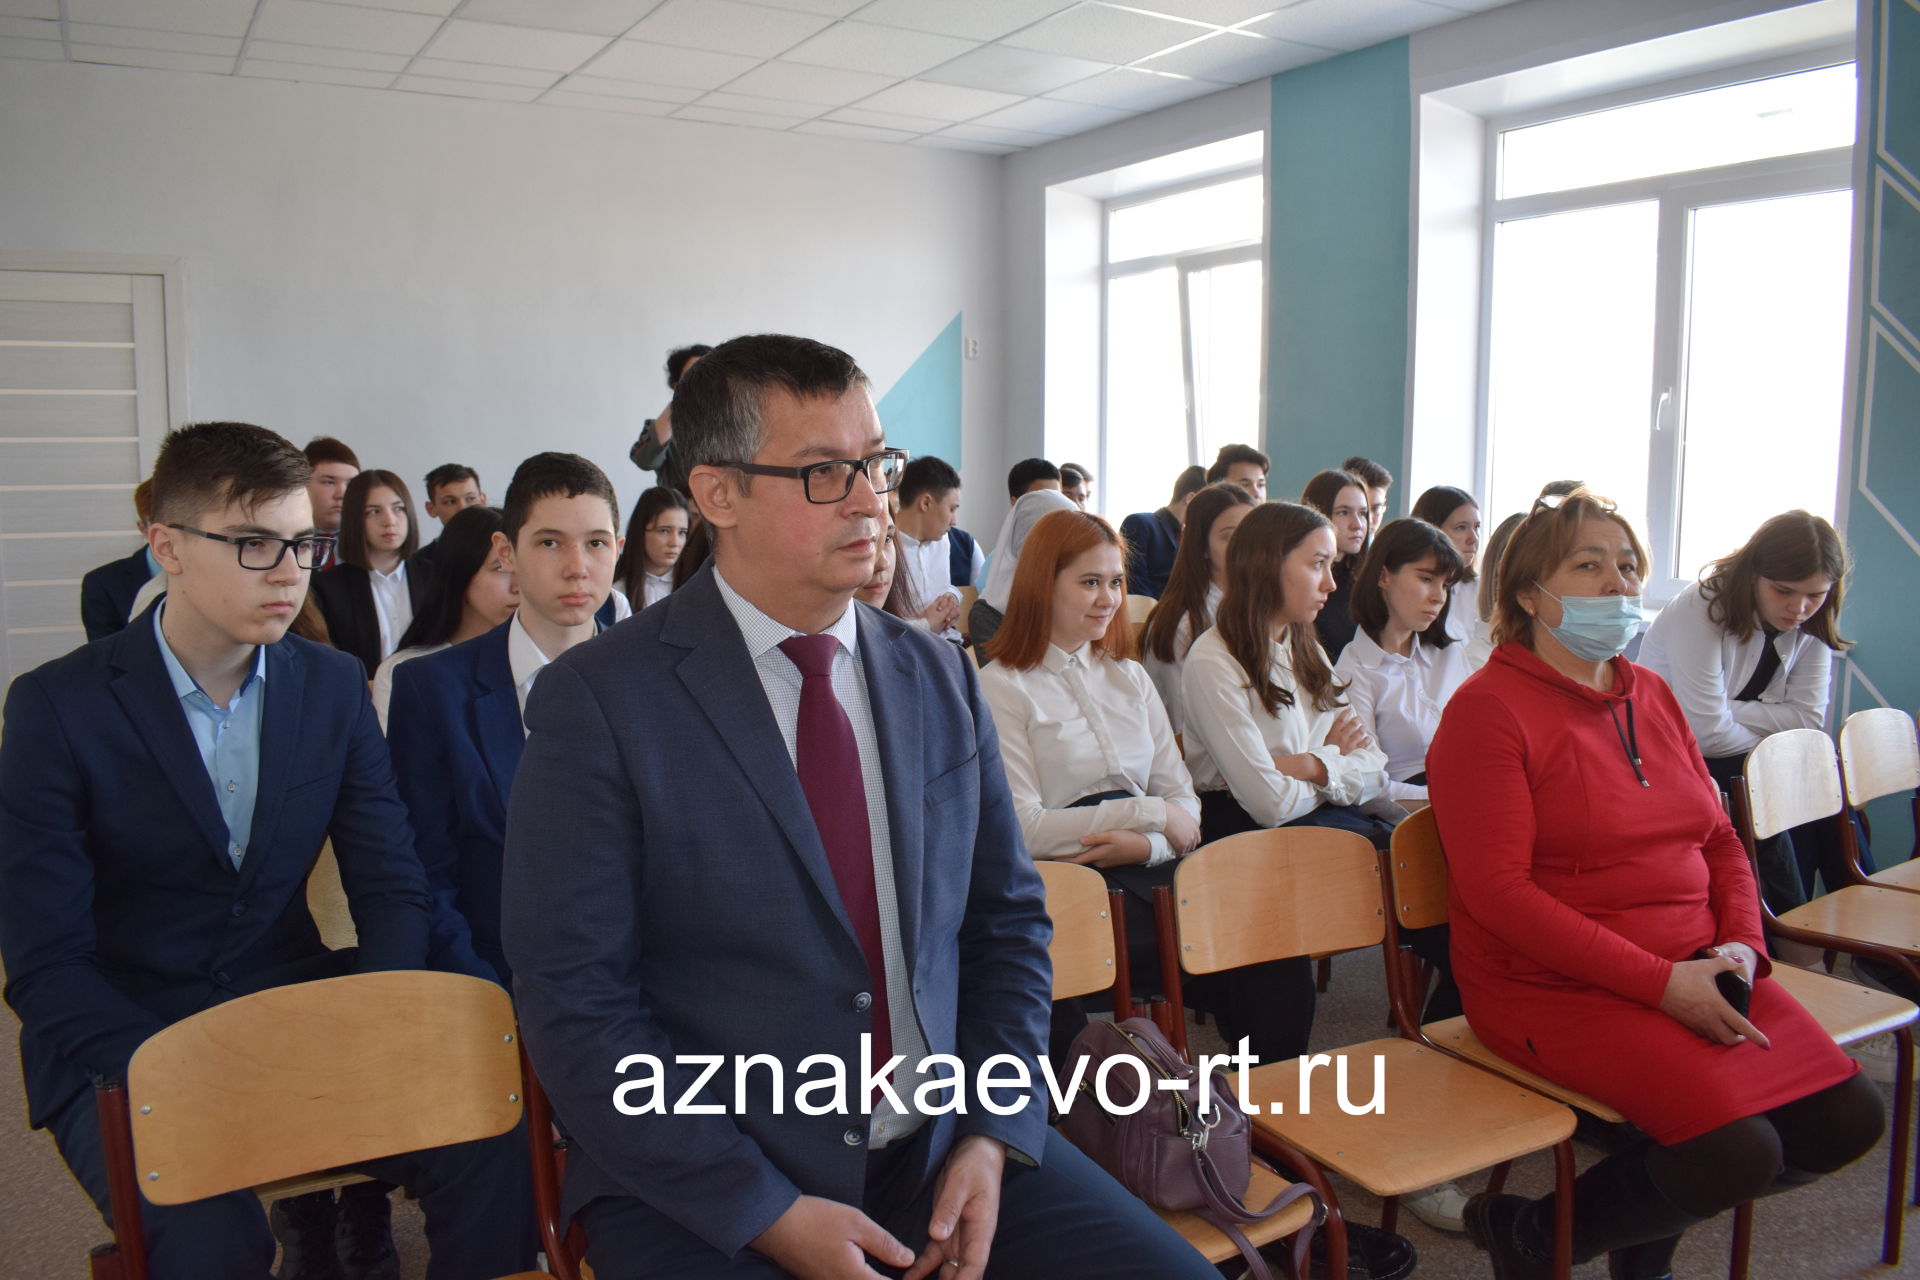 Активисты ТОС №6 организовали познавательную встречу с врачом для учащихся гимназии